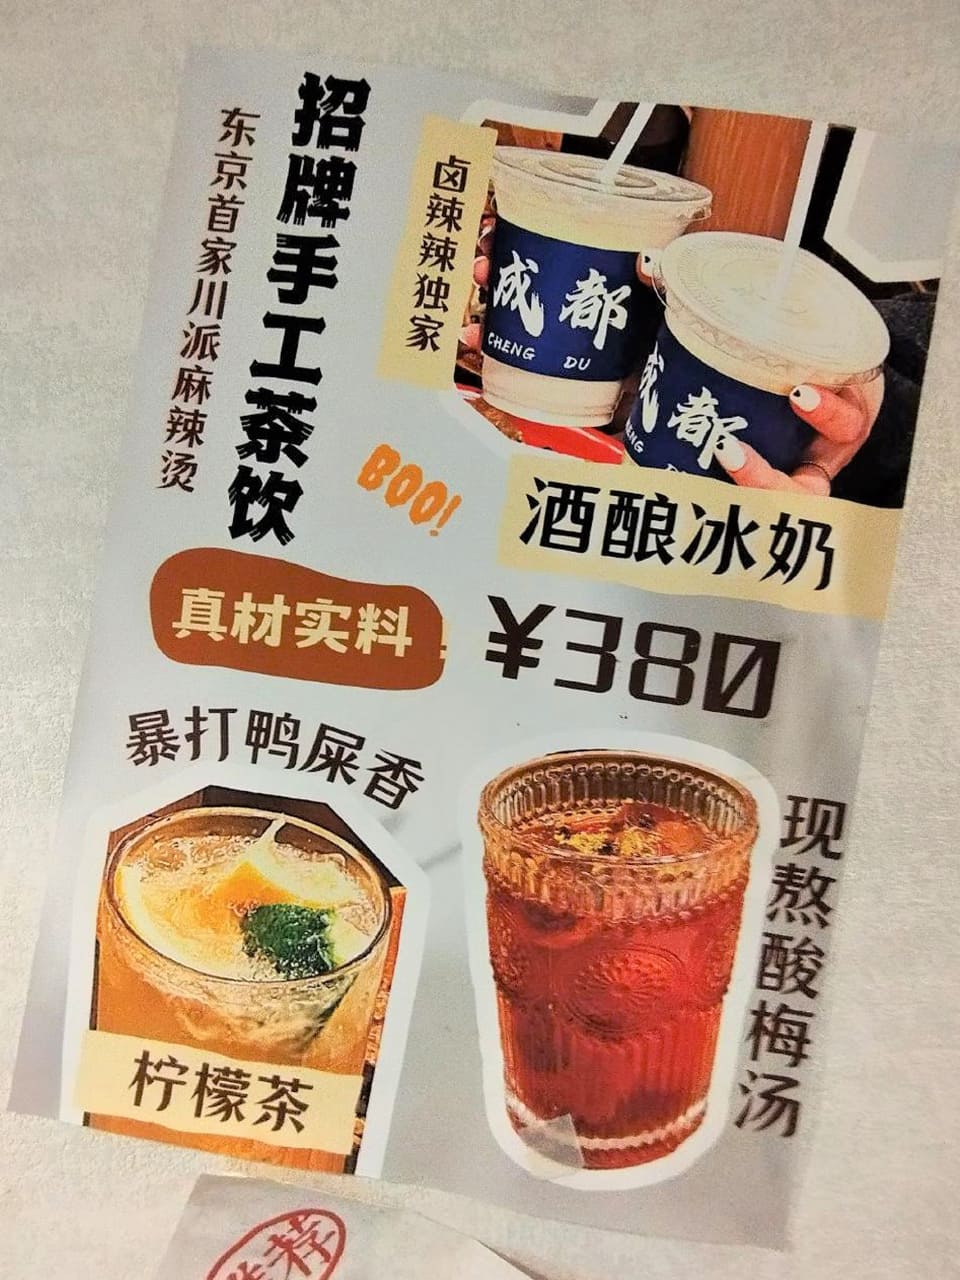 滷辣辣オリジナルドリンクの自家製酸梅湯やレモン茶、小豆アイスミルク(紅豆冰奶)